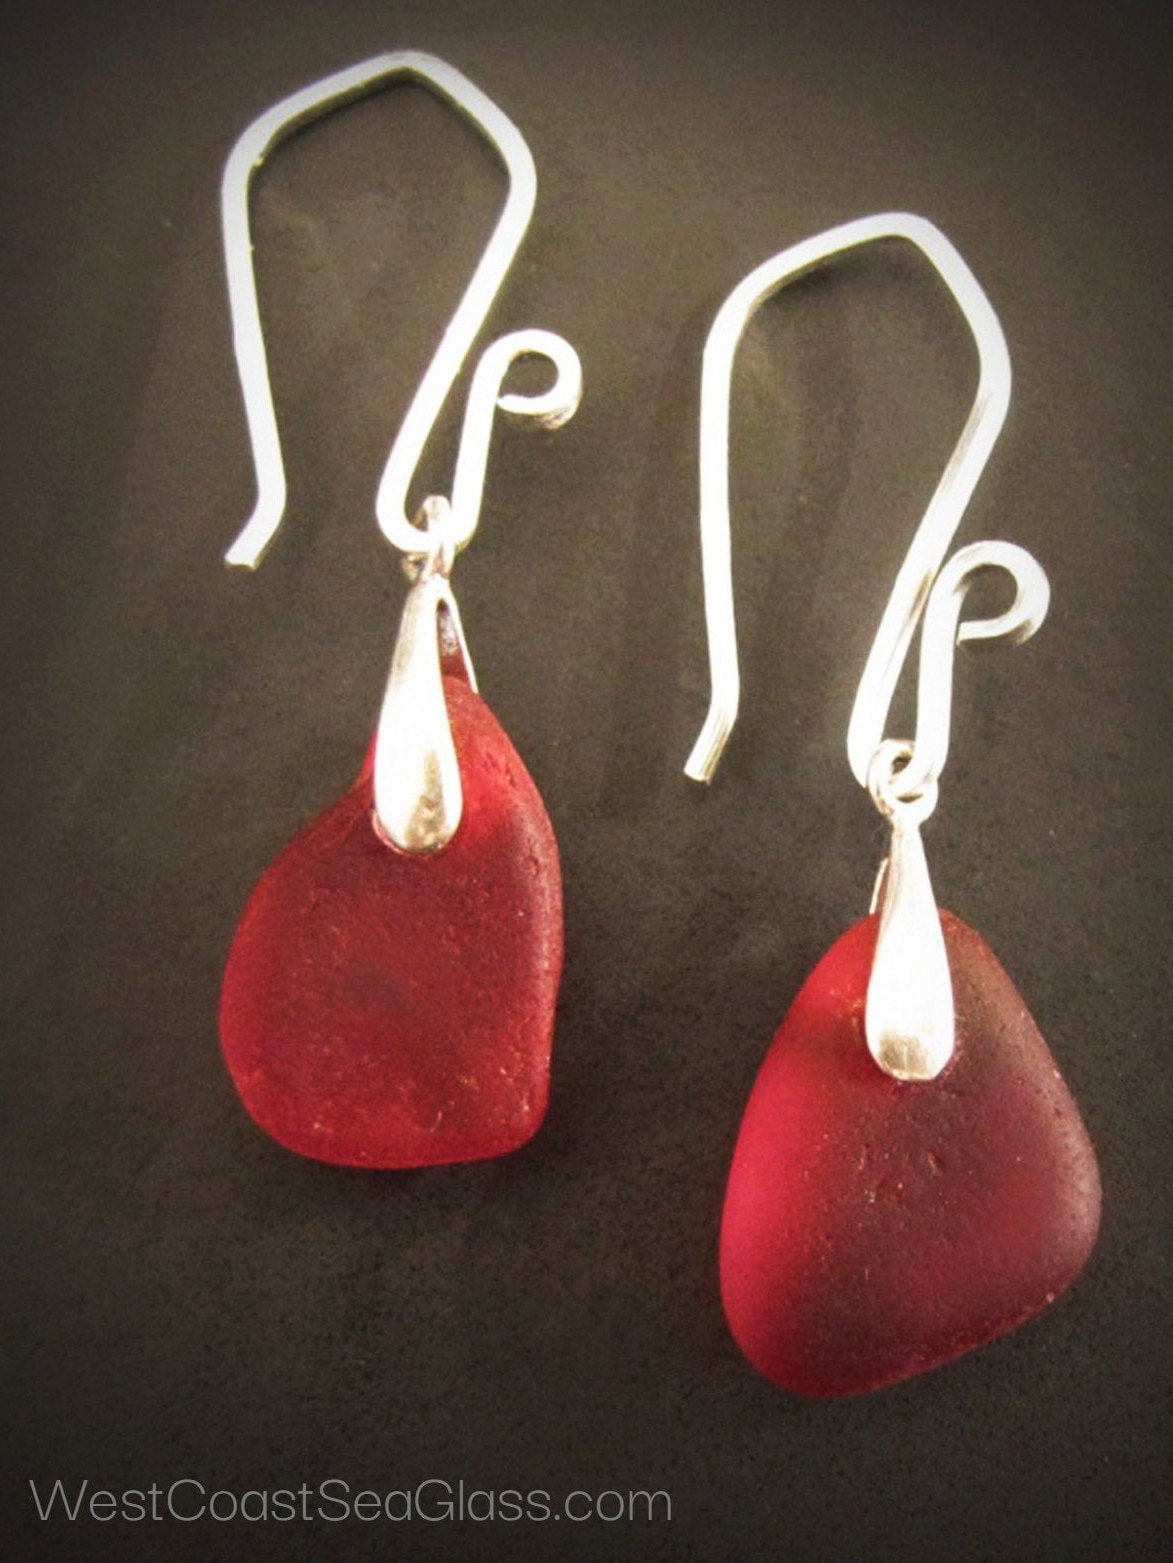 FOLLOW YOUR HEART Tangerine Sea Glass Earrings | Coquina Dance Jewelry  FOLLOW YOUR HEART Tangerine Sea Glass Earrings